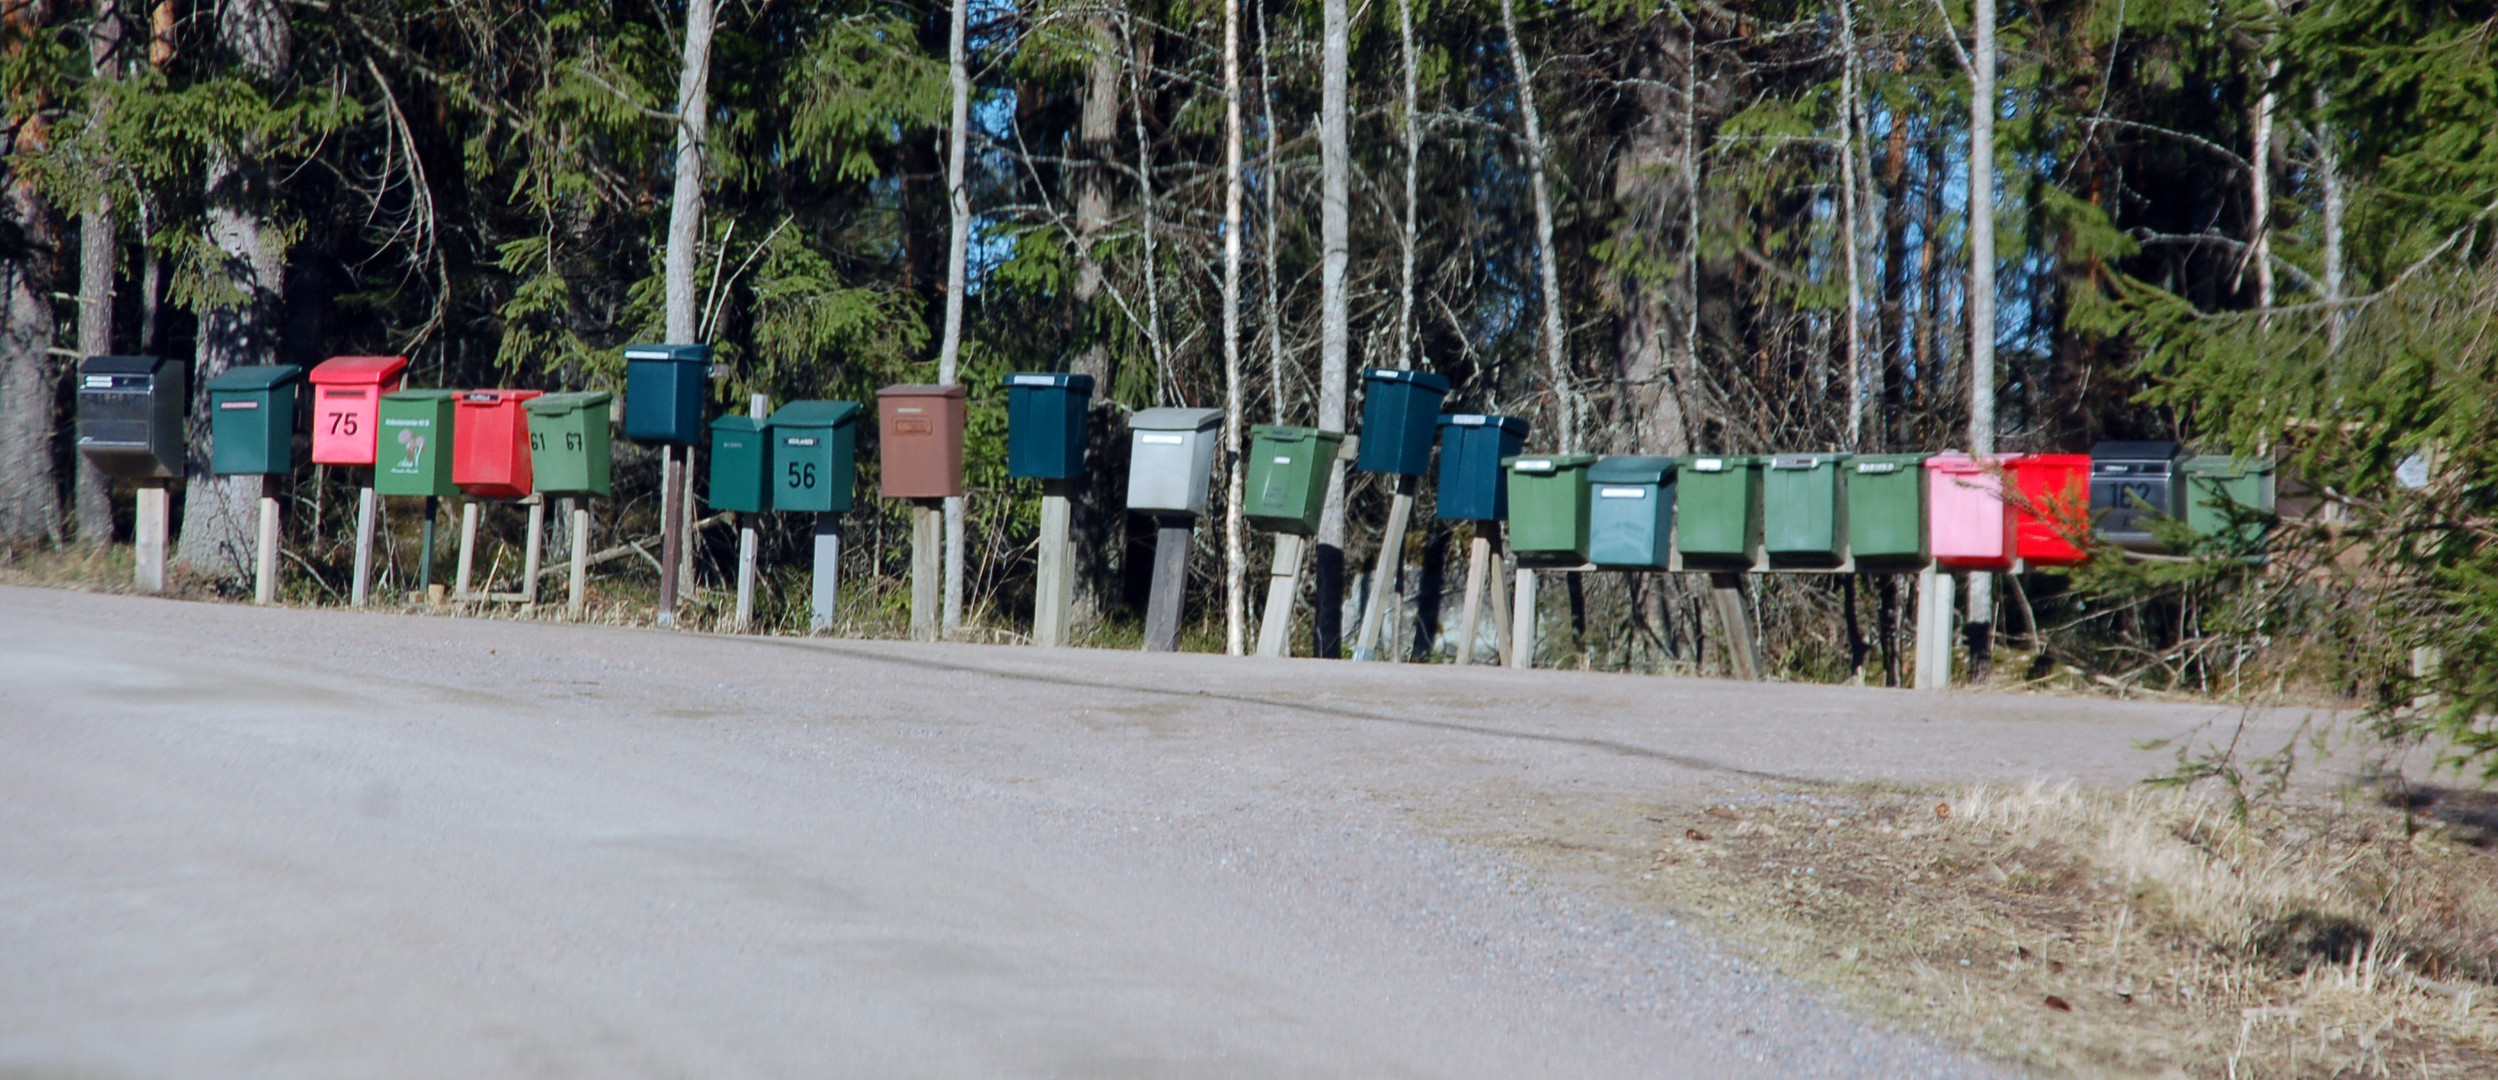 Summergottages postbox in Heinola